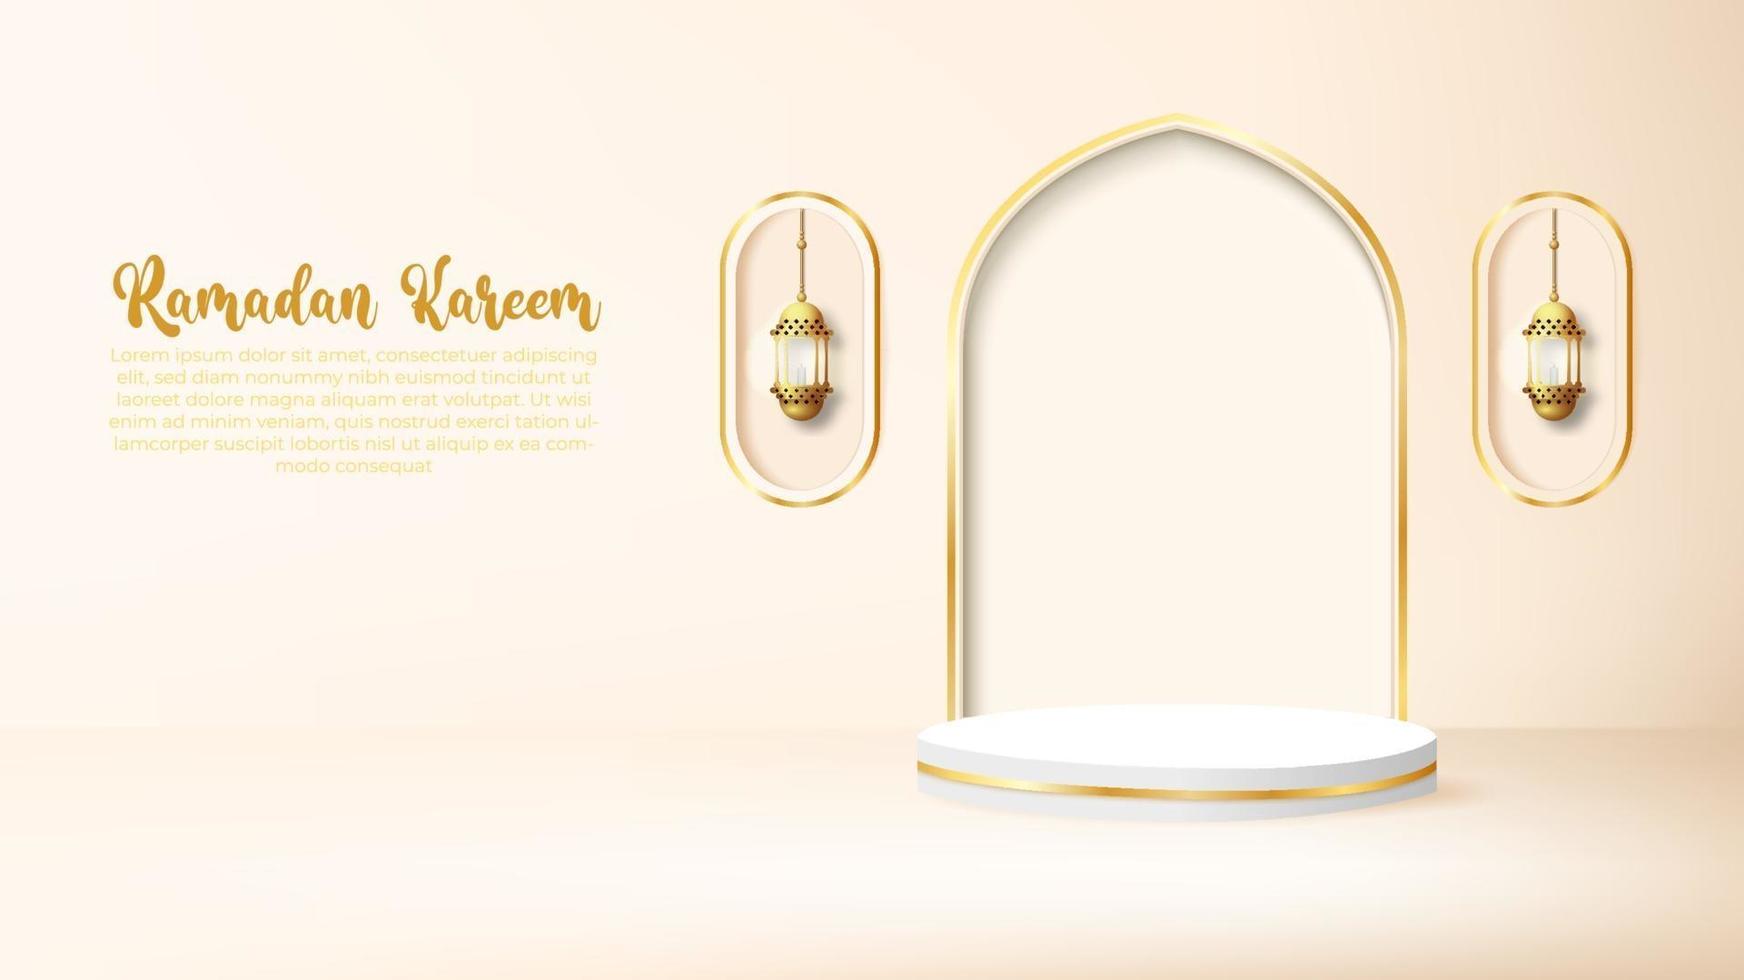 Fond de ramadan kareem 3D avec lampe dorée et podium. vecteur